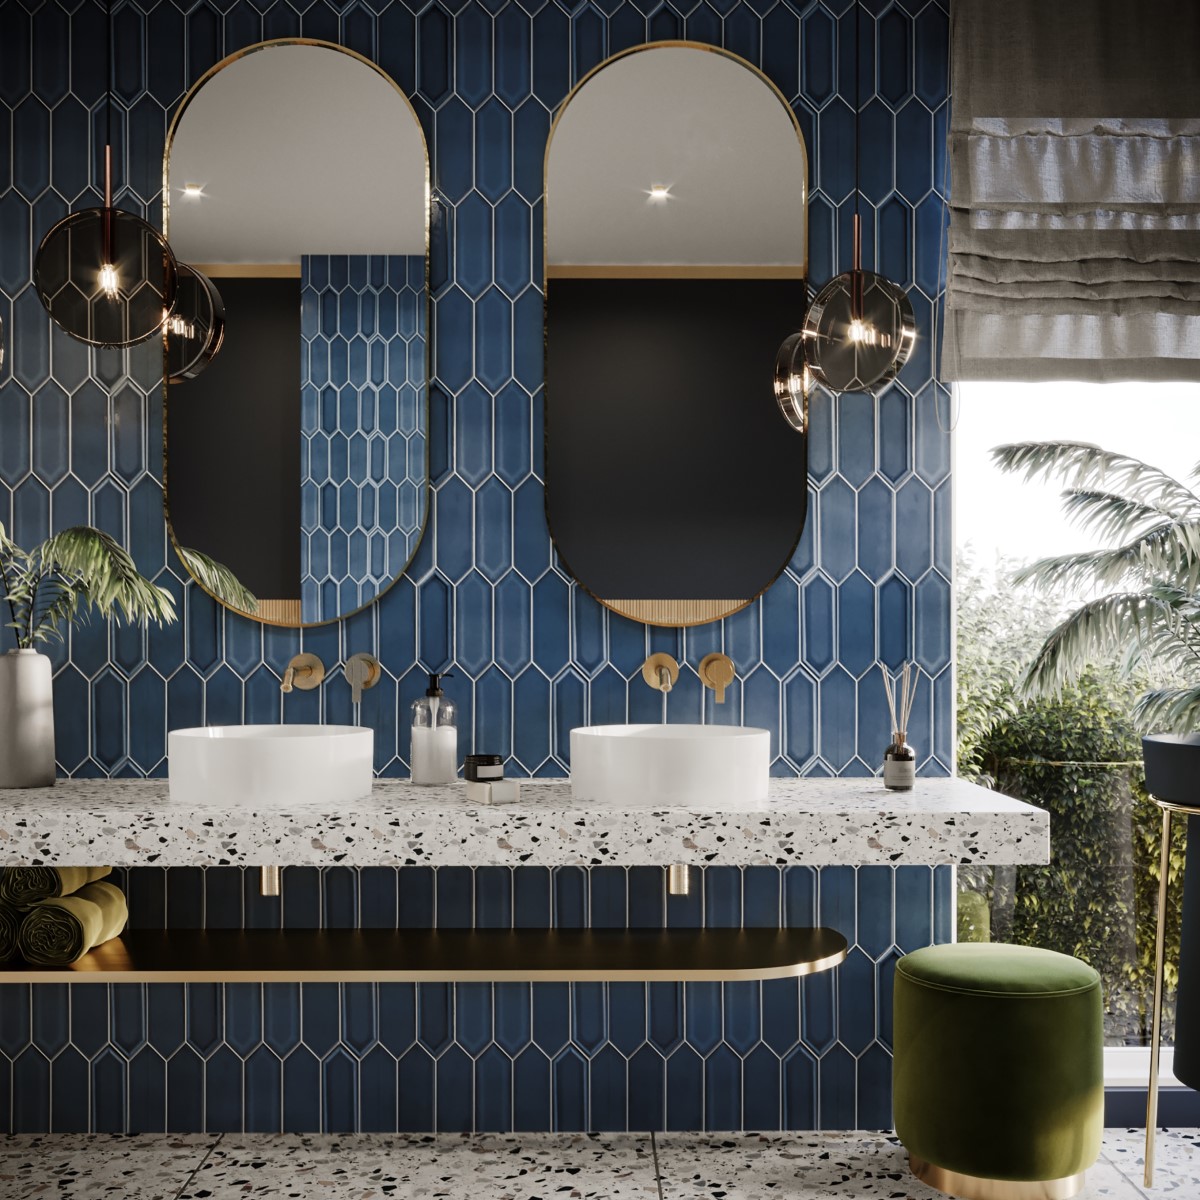 Một lớp gạch thẻ màu xanh dương làm nền tảng cho phòng tắm thêm phong cách và hiện đại